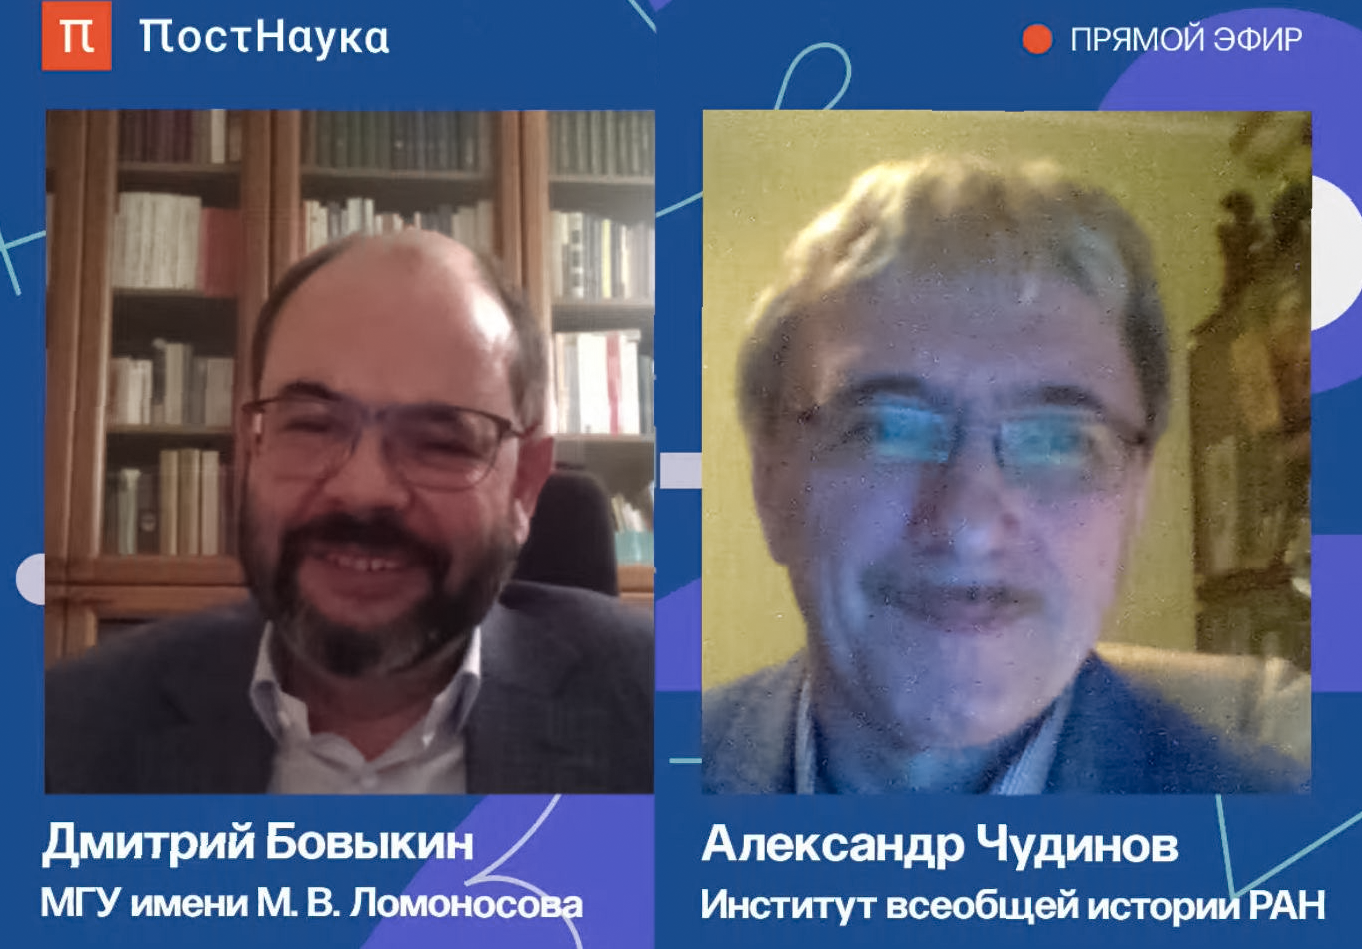 Д.Ю. Бовыкин принял участие в дискуссии "Роль революций в истории" на портале "ПостНаука"